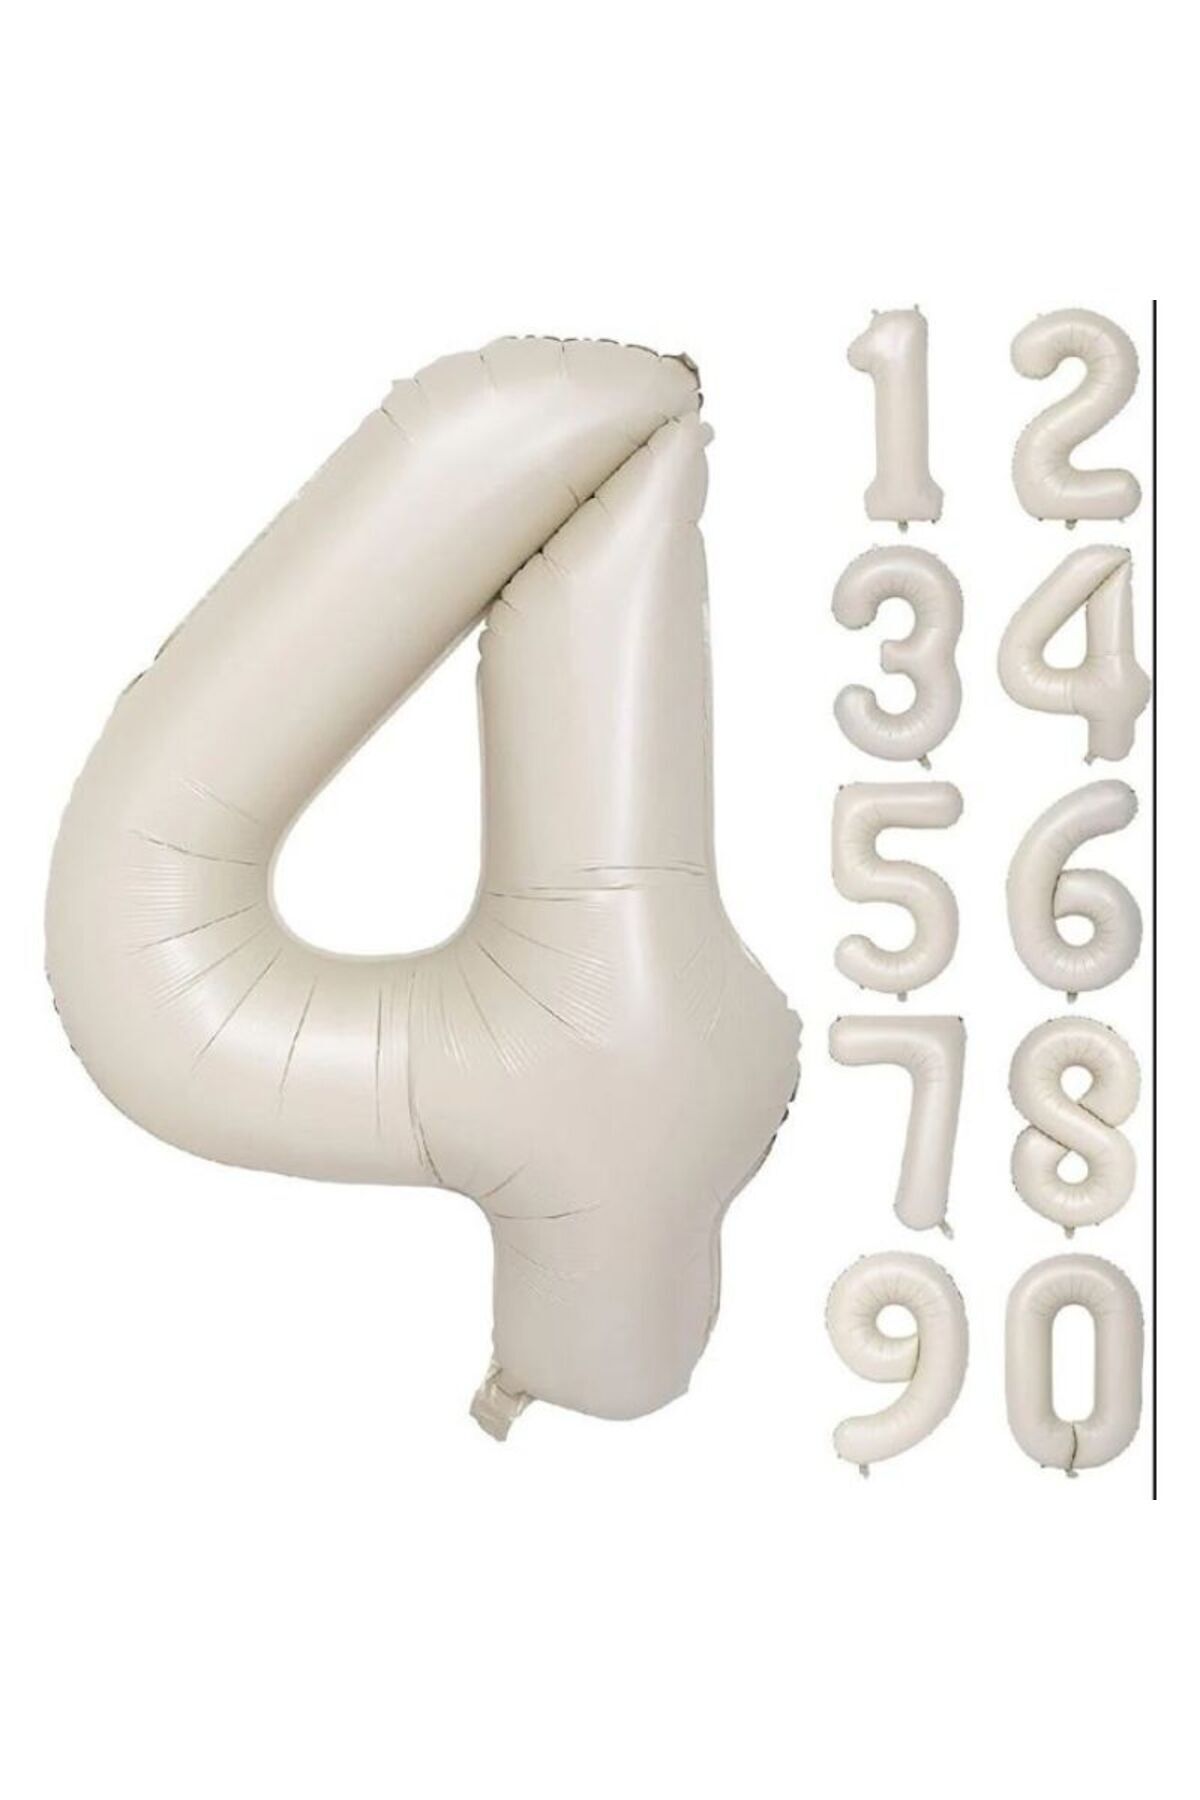 Onay Store Folyo Balon 4 Rakamı Helyum Balon 76 Cm Krem Renk - 4 Yaş Balonu - Doğum Günü Parti Seti Malzemeleri